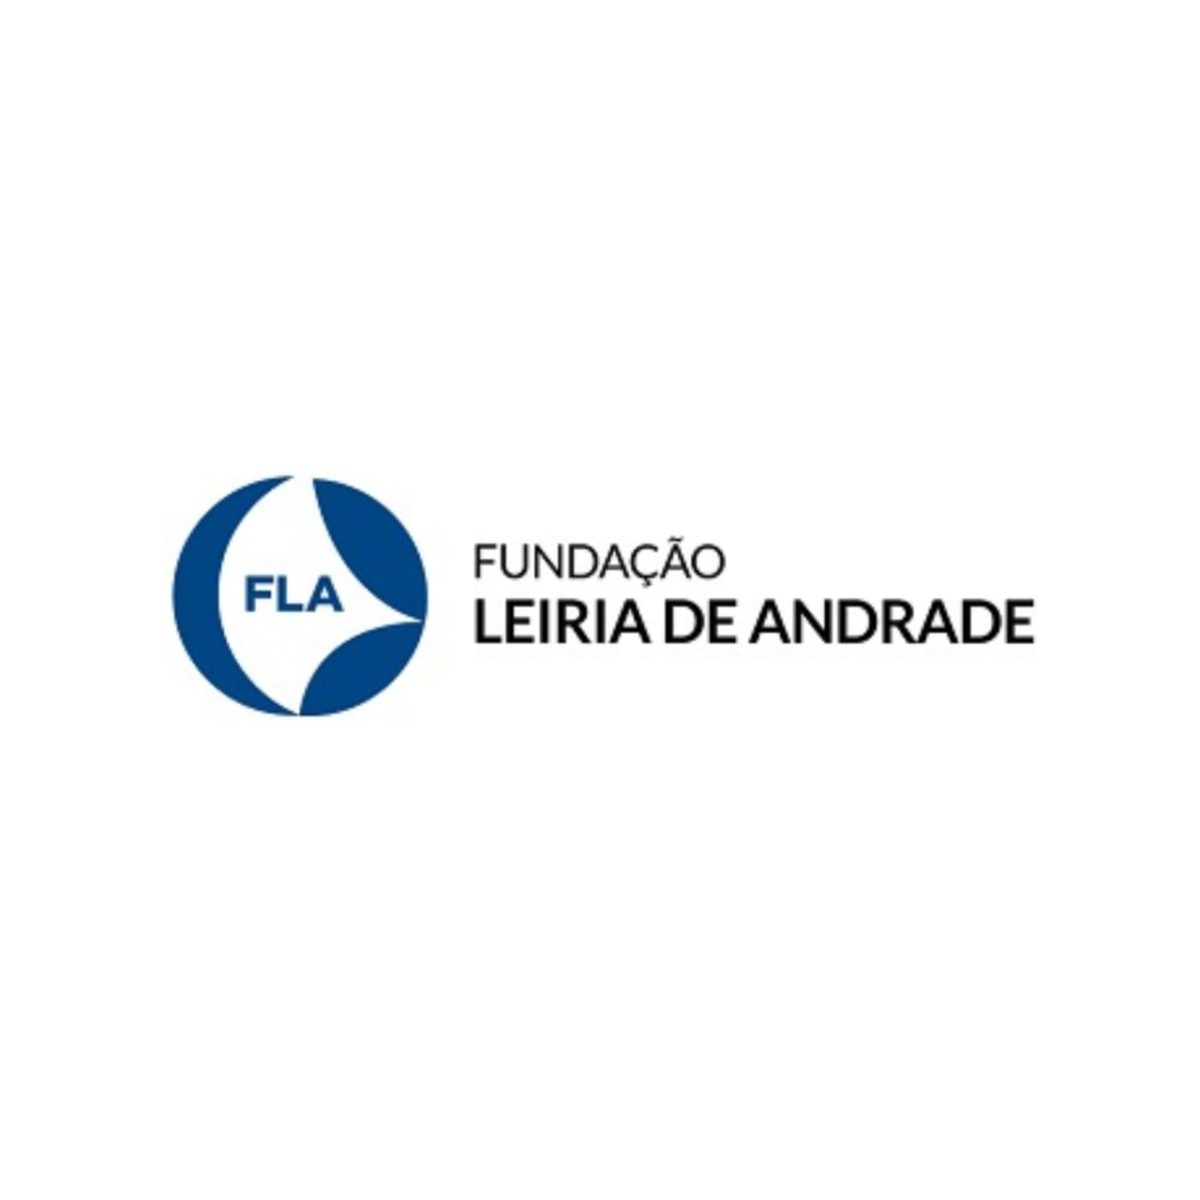 Está aberto o edital de seleção do Curso de Especialização em Oftalmologia da Fundação Leiria de Andrade período de 2022 a 2025.